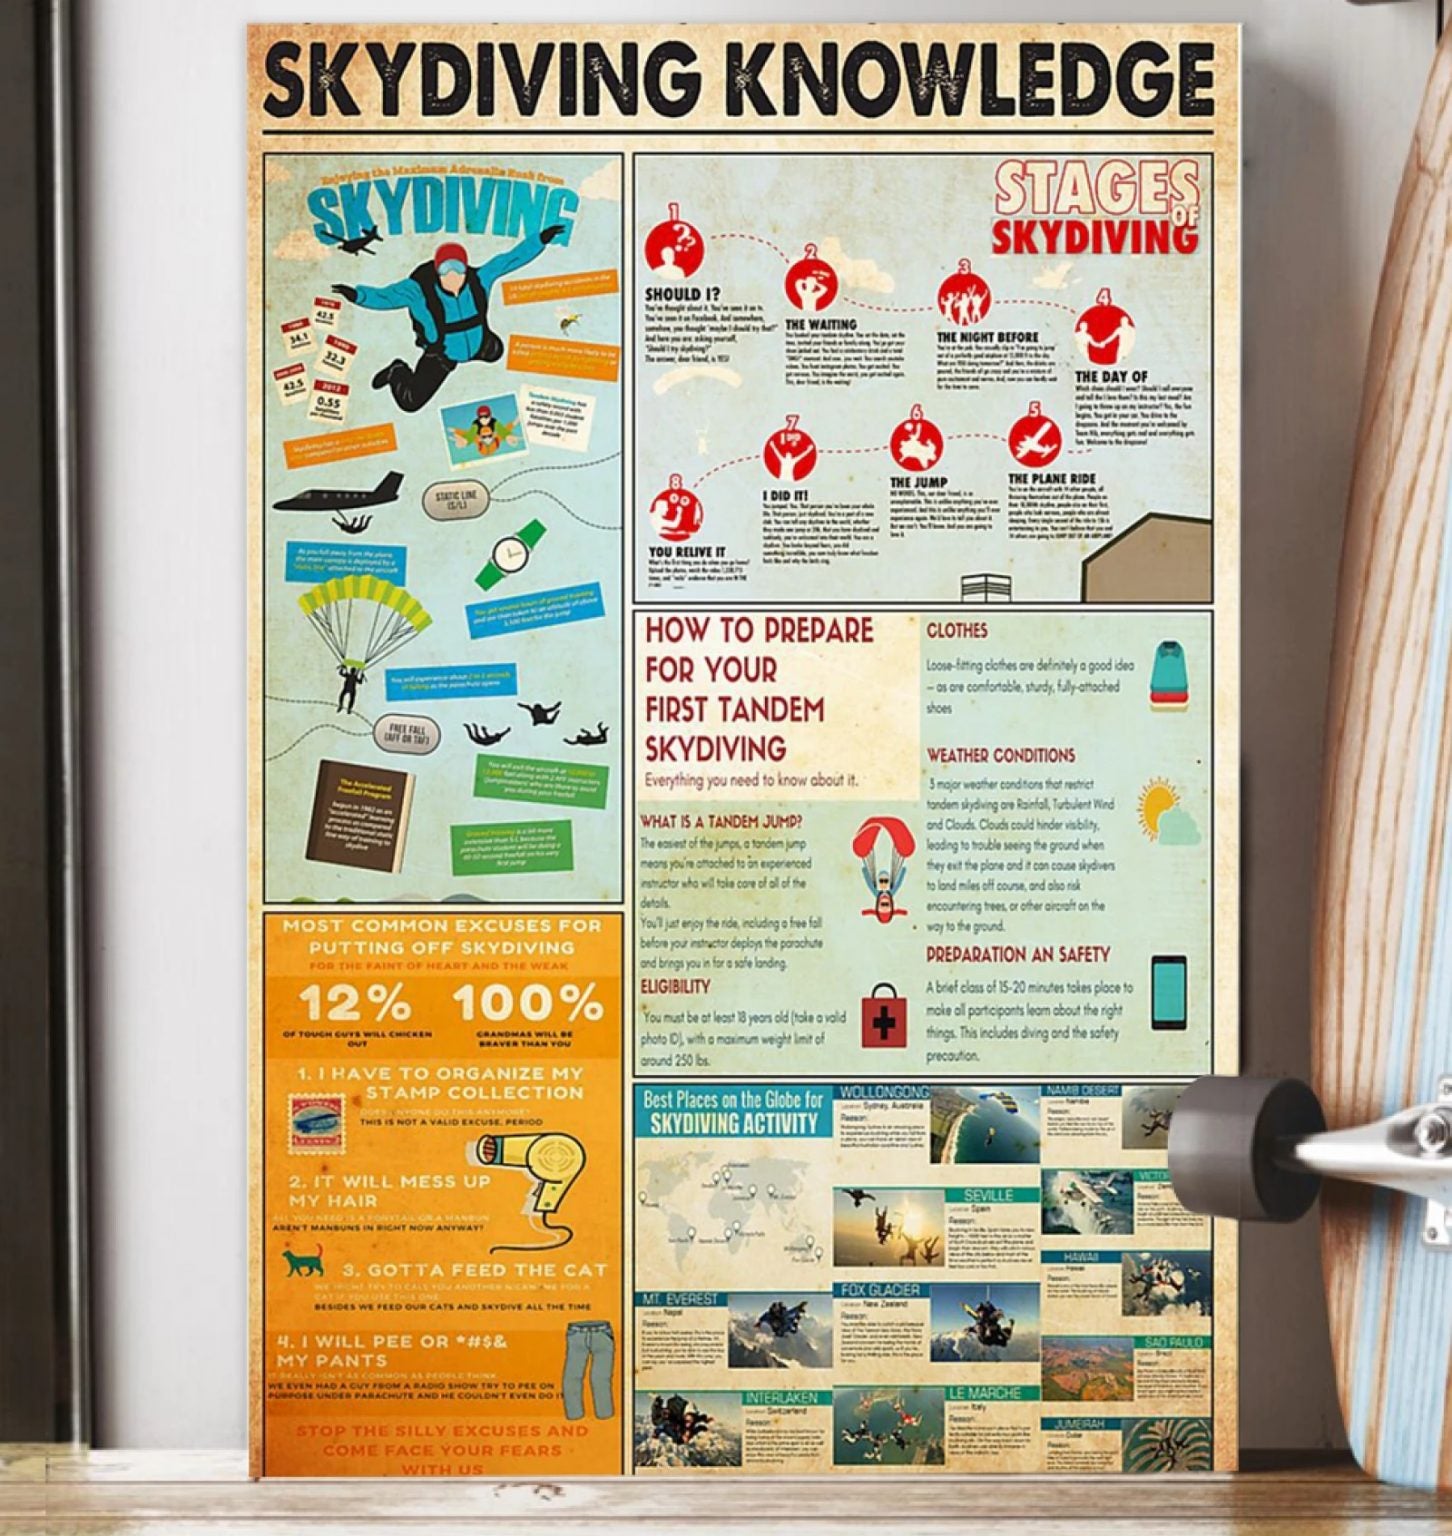 Skydiving Knowledge